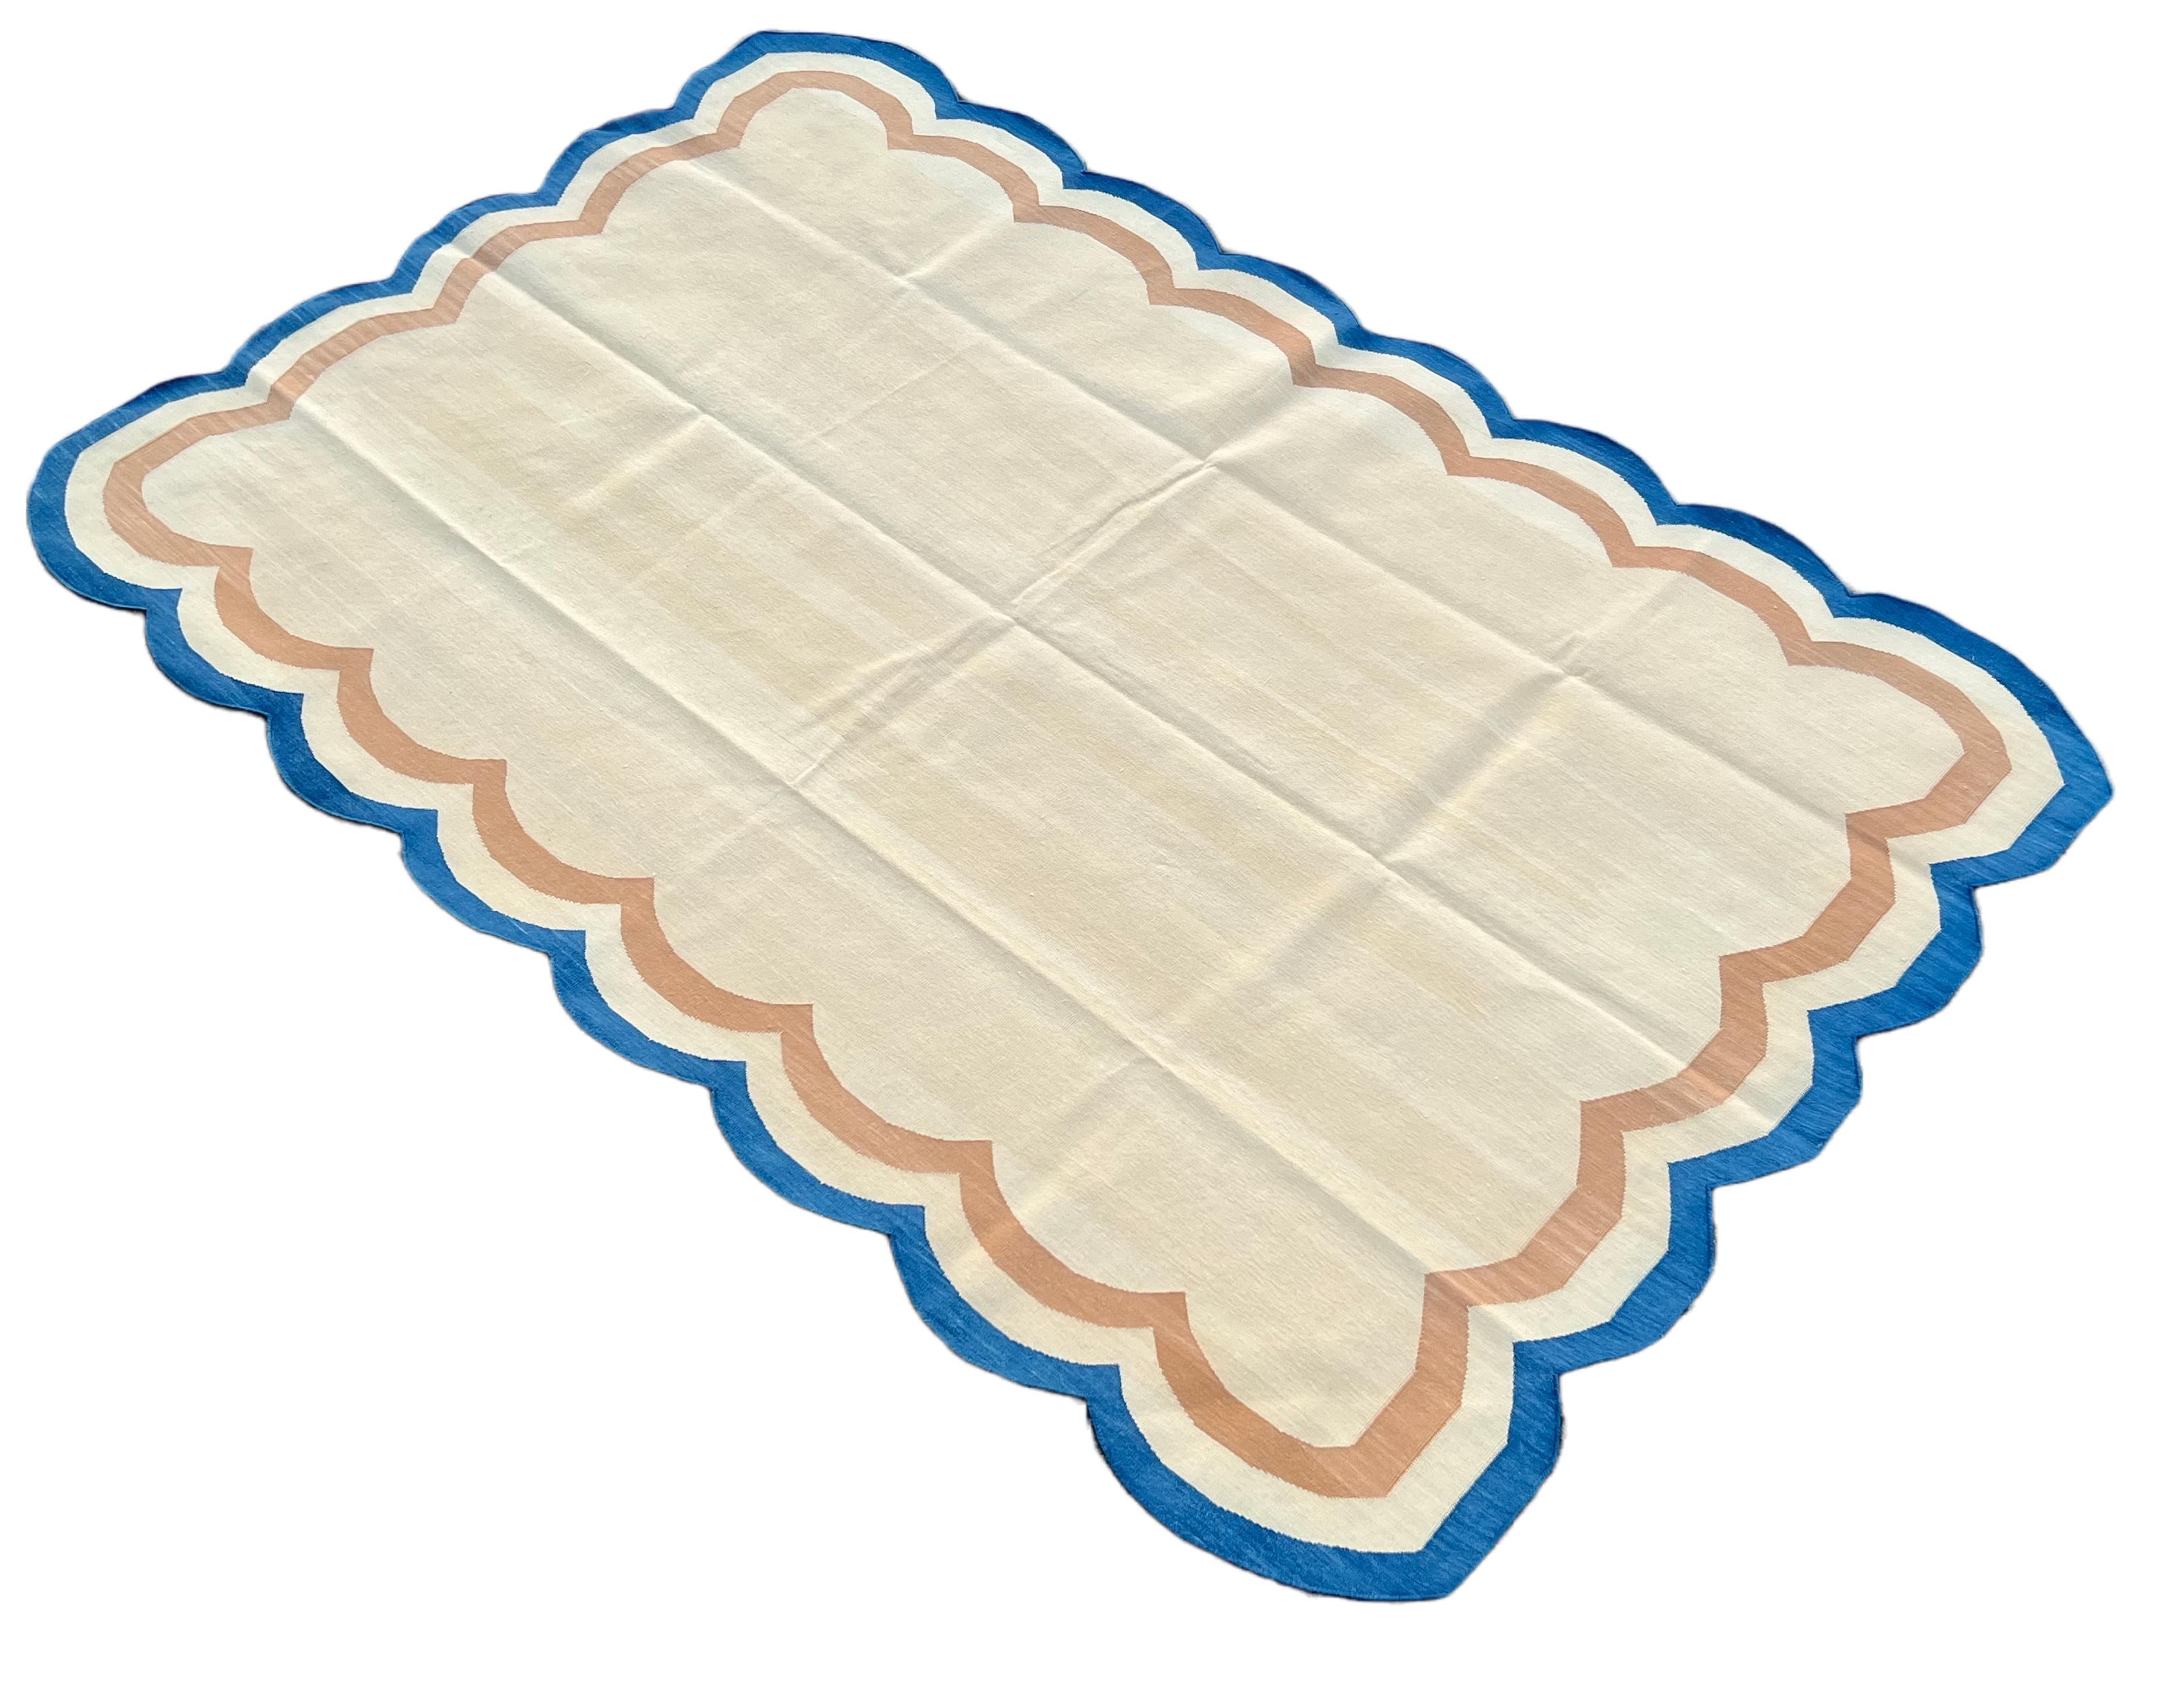 Baumwolle pflanzlich gefärbt Reversible Creme, Senf und Blau Vier Seiten Scalloped indischen Teppich - 5'x8'
Diese speziellen flachgewebten Dhurries werden aus 15-fachem Garn aus 100% Baumwolle handgewebt. Aufgrund der speziellen